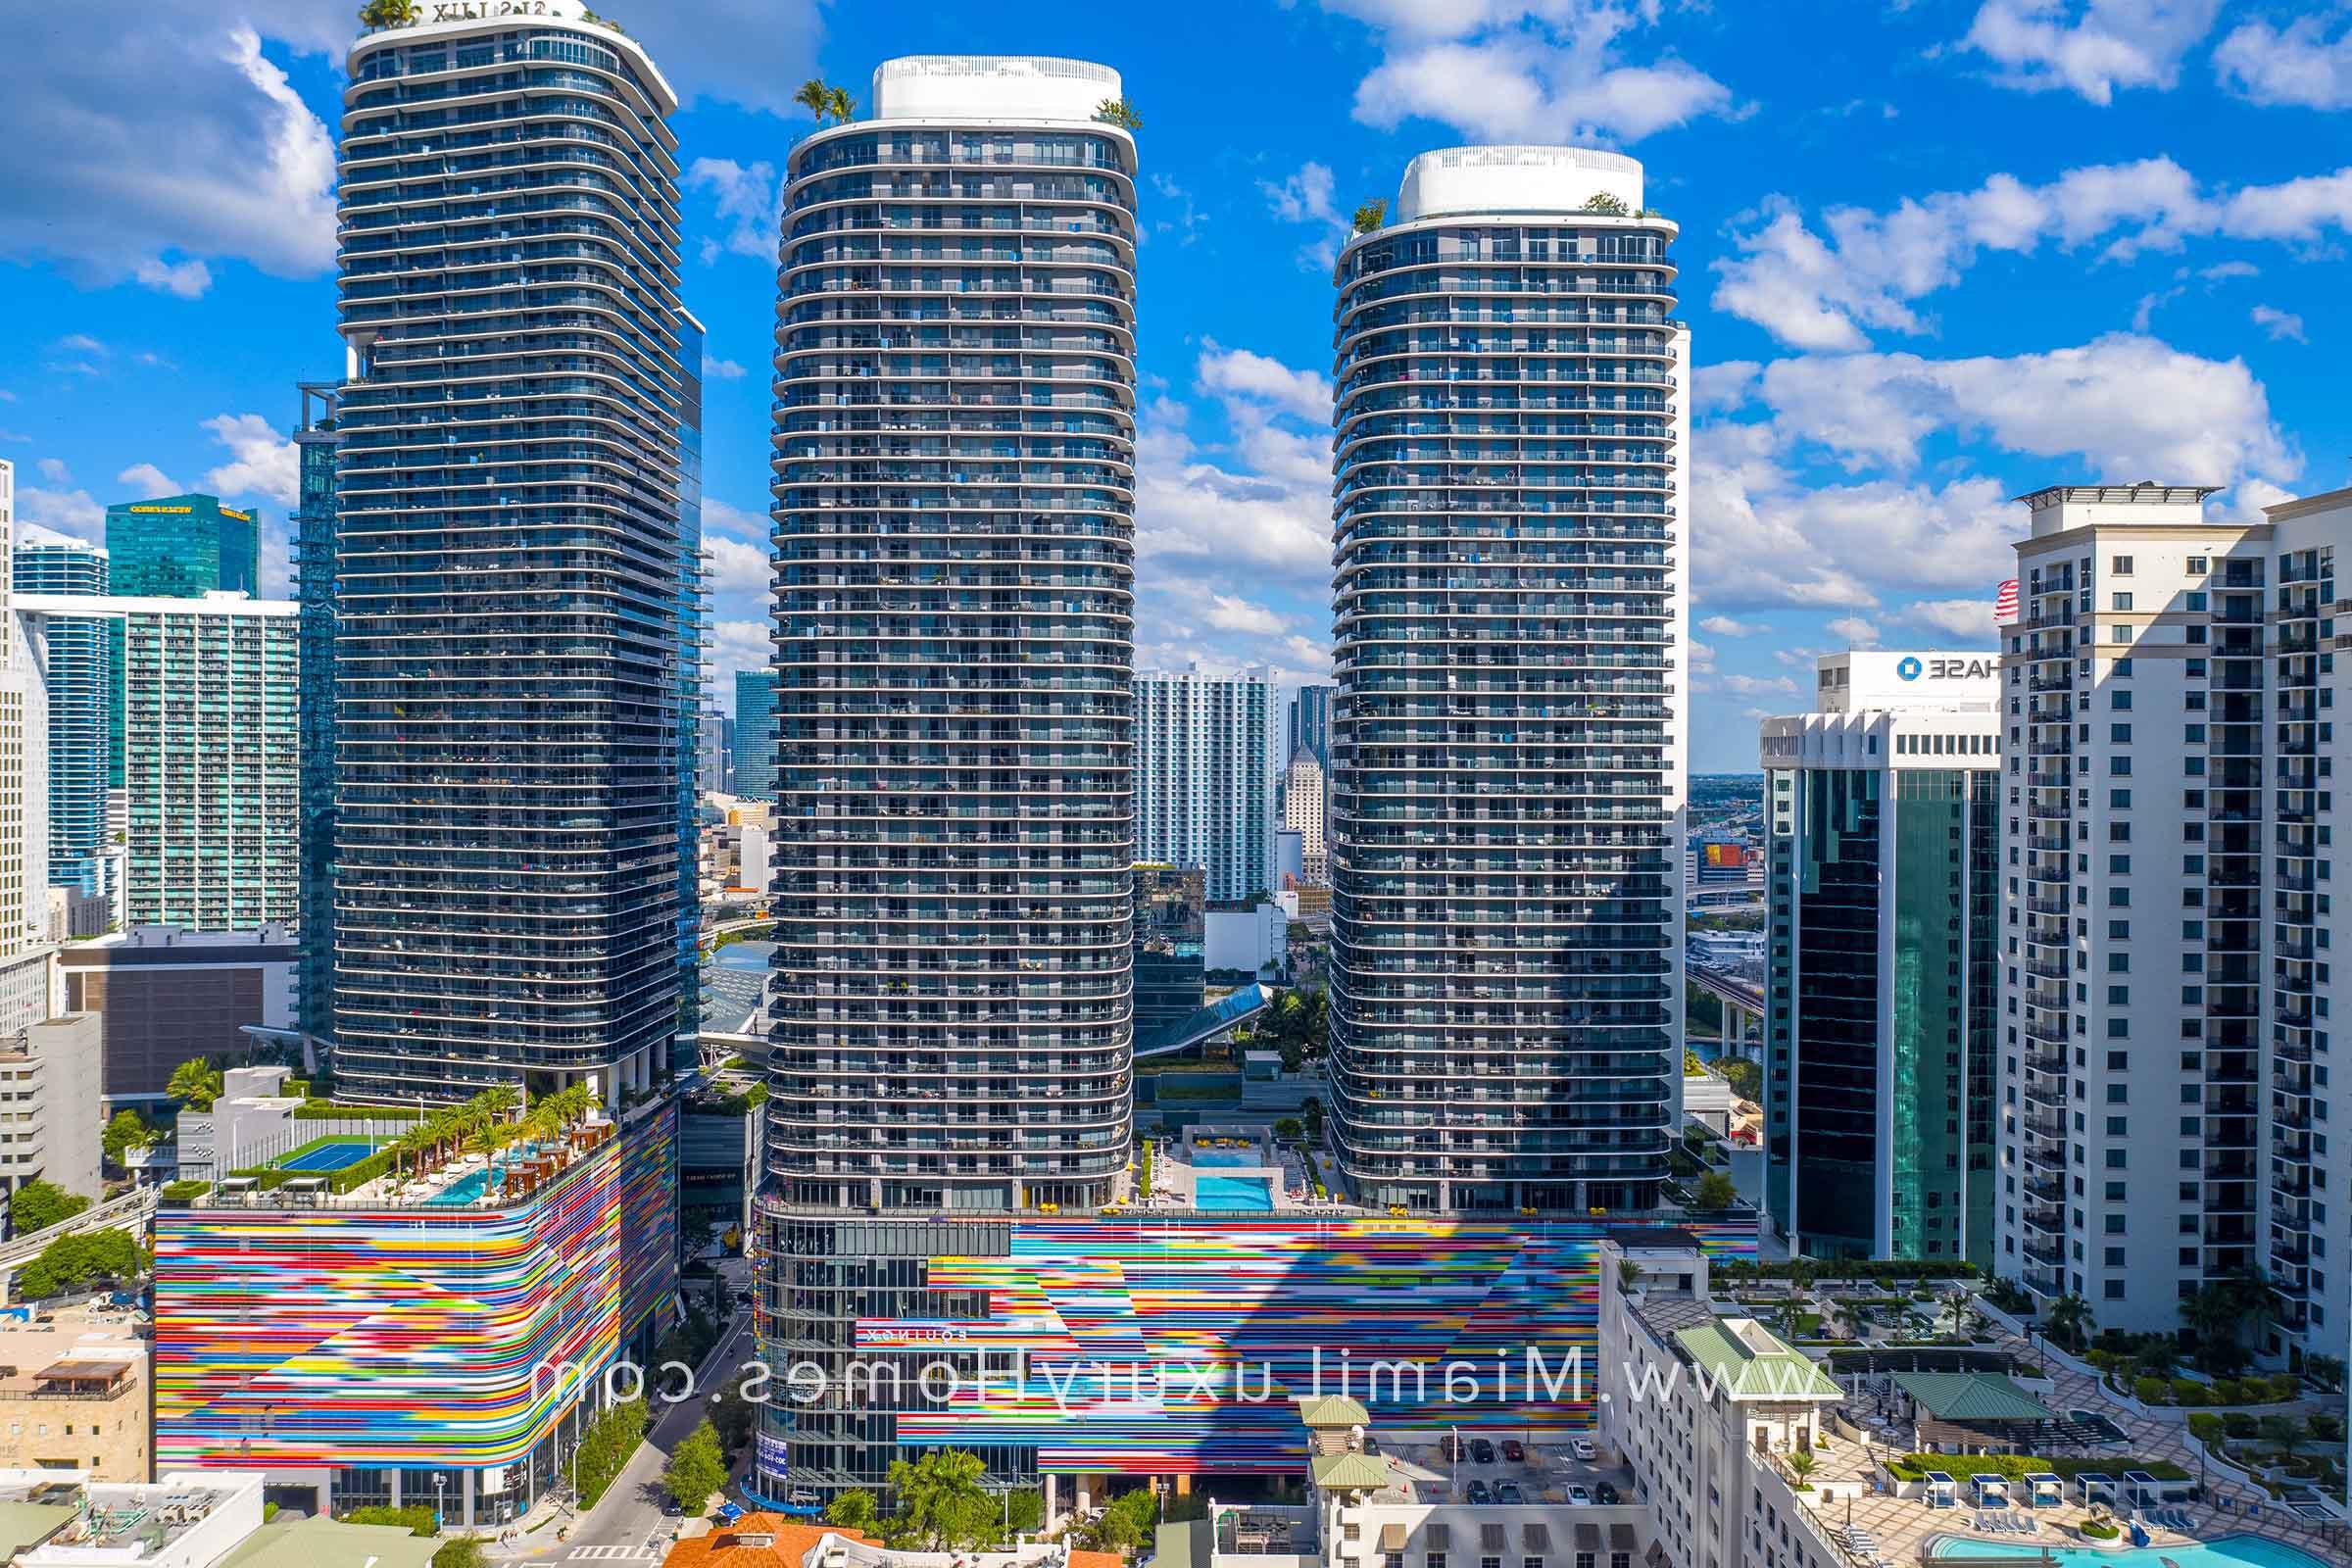 Brickell温泉温泉山庄 Condo Buildings in Miami